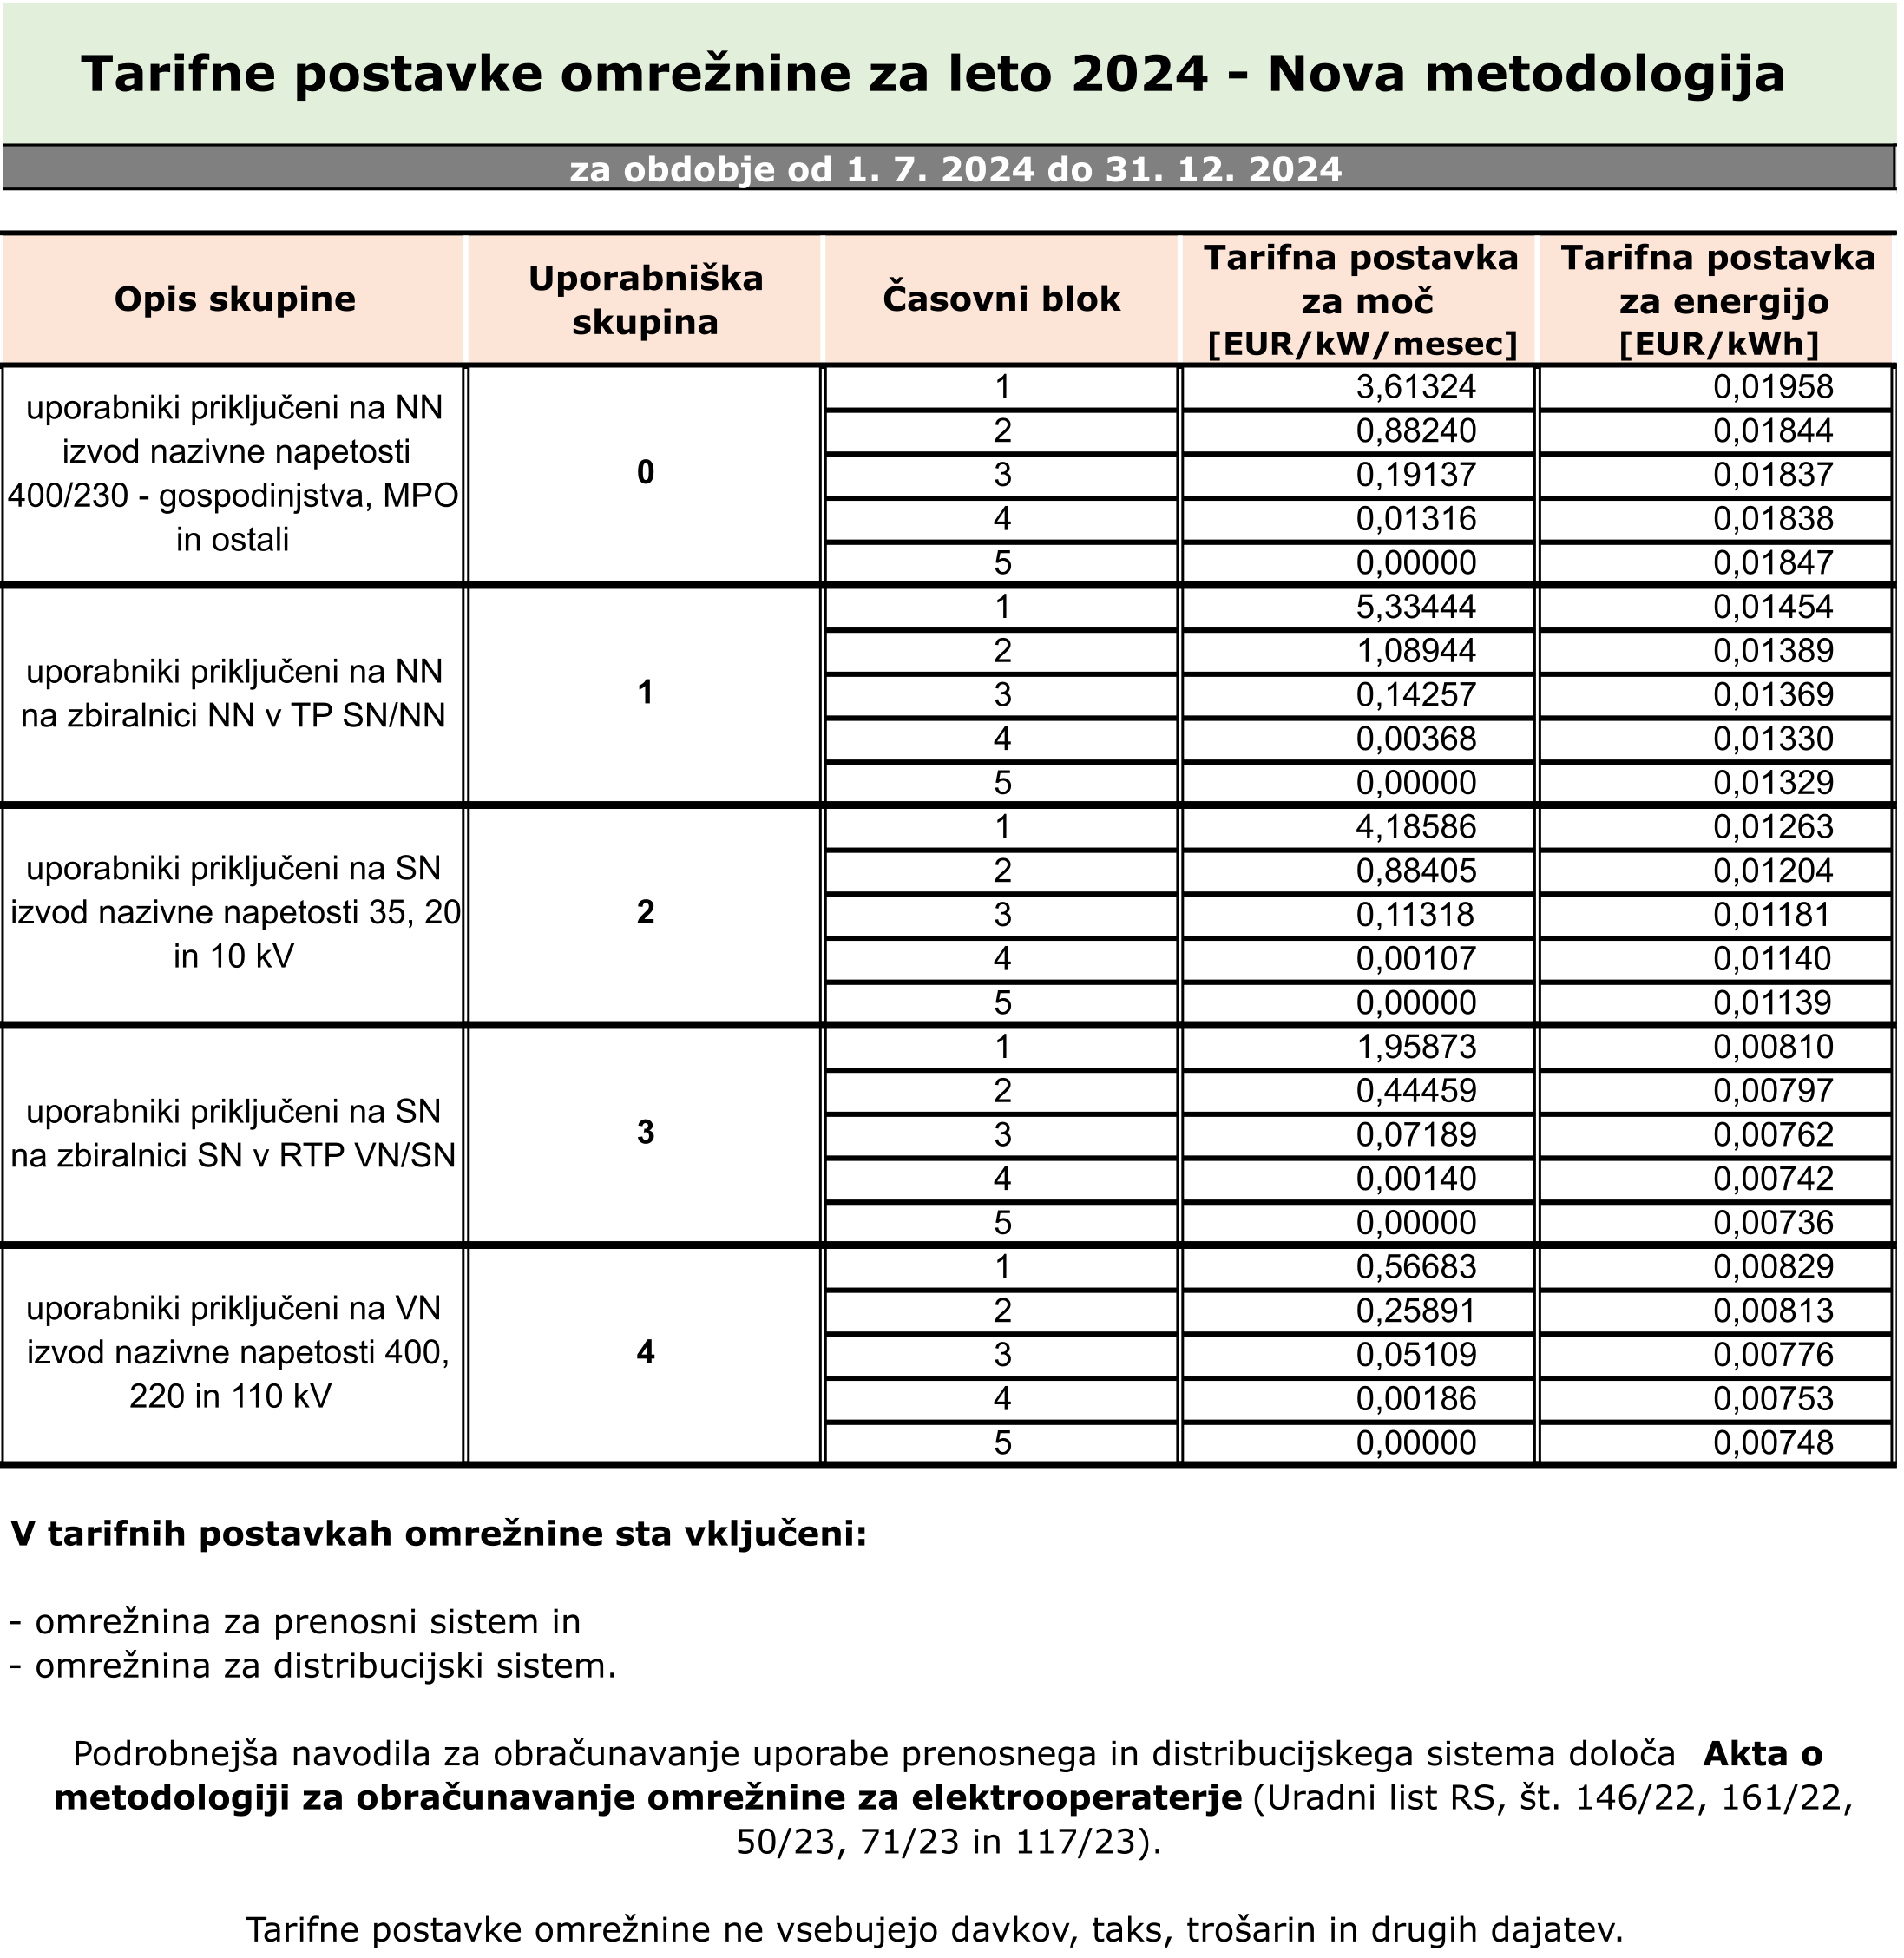 Slika prikazuje tarifne postavke določene po novi metodologiji.